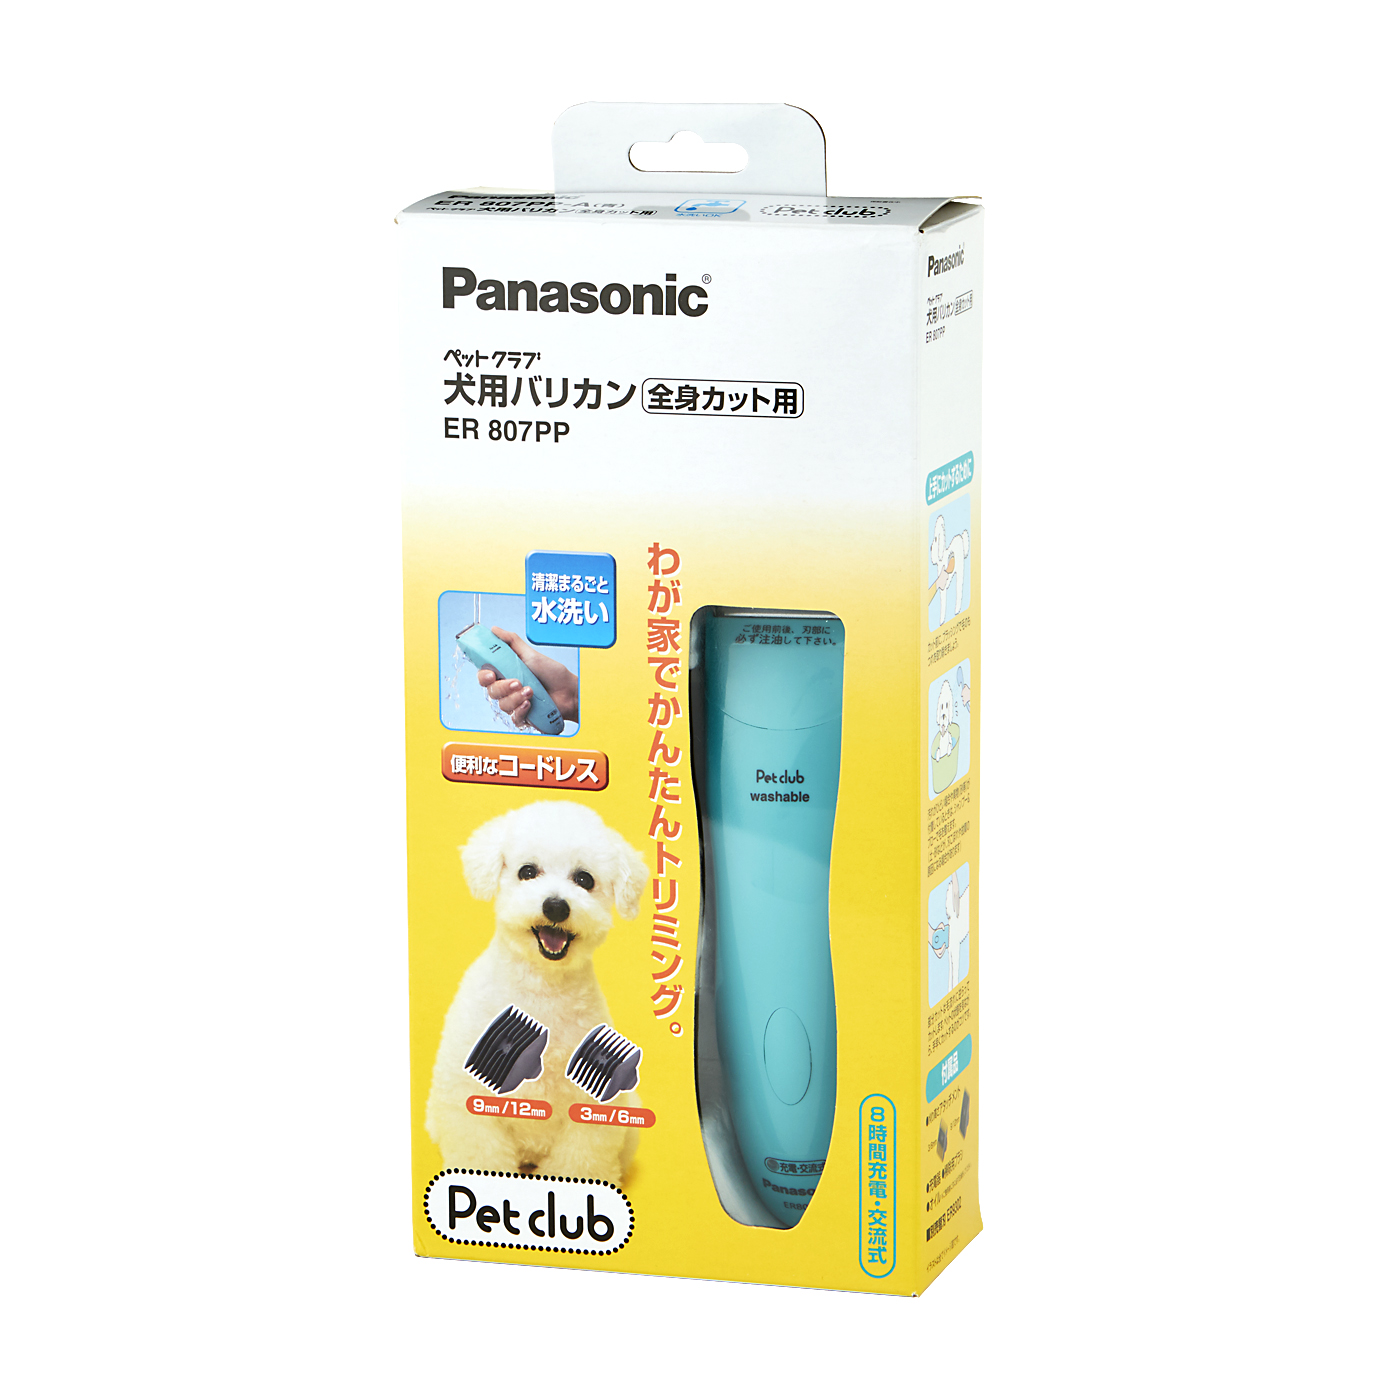 パナソニック 犬用バリカン(充電交流式) ペットクラブ ER807PP-A 返品種別A